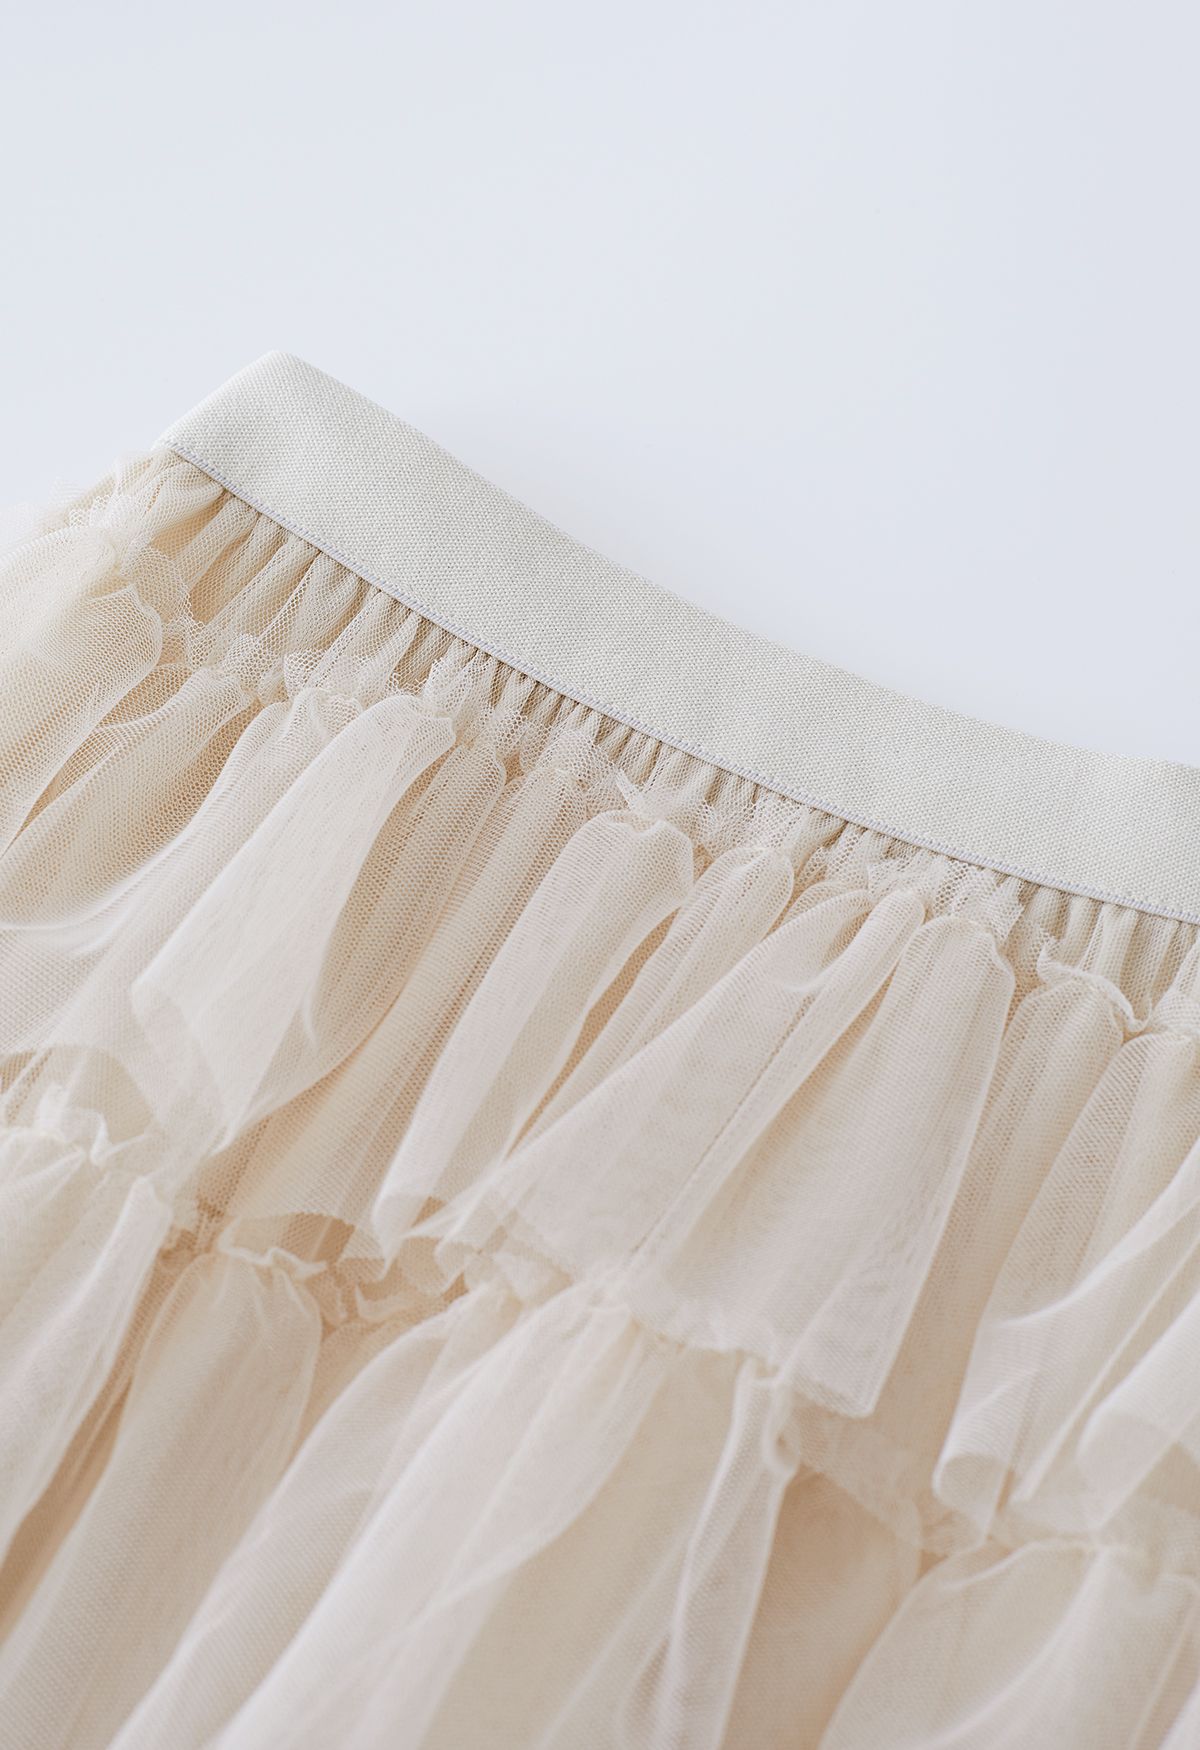 Falda larga de malla de tul con volantes en capas en color crema